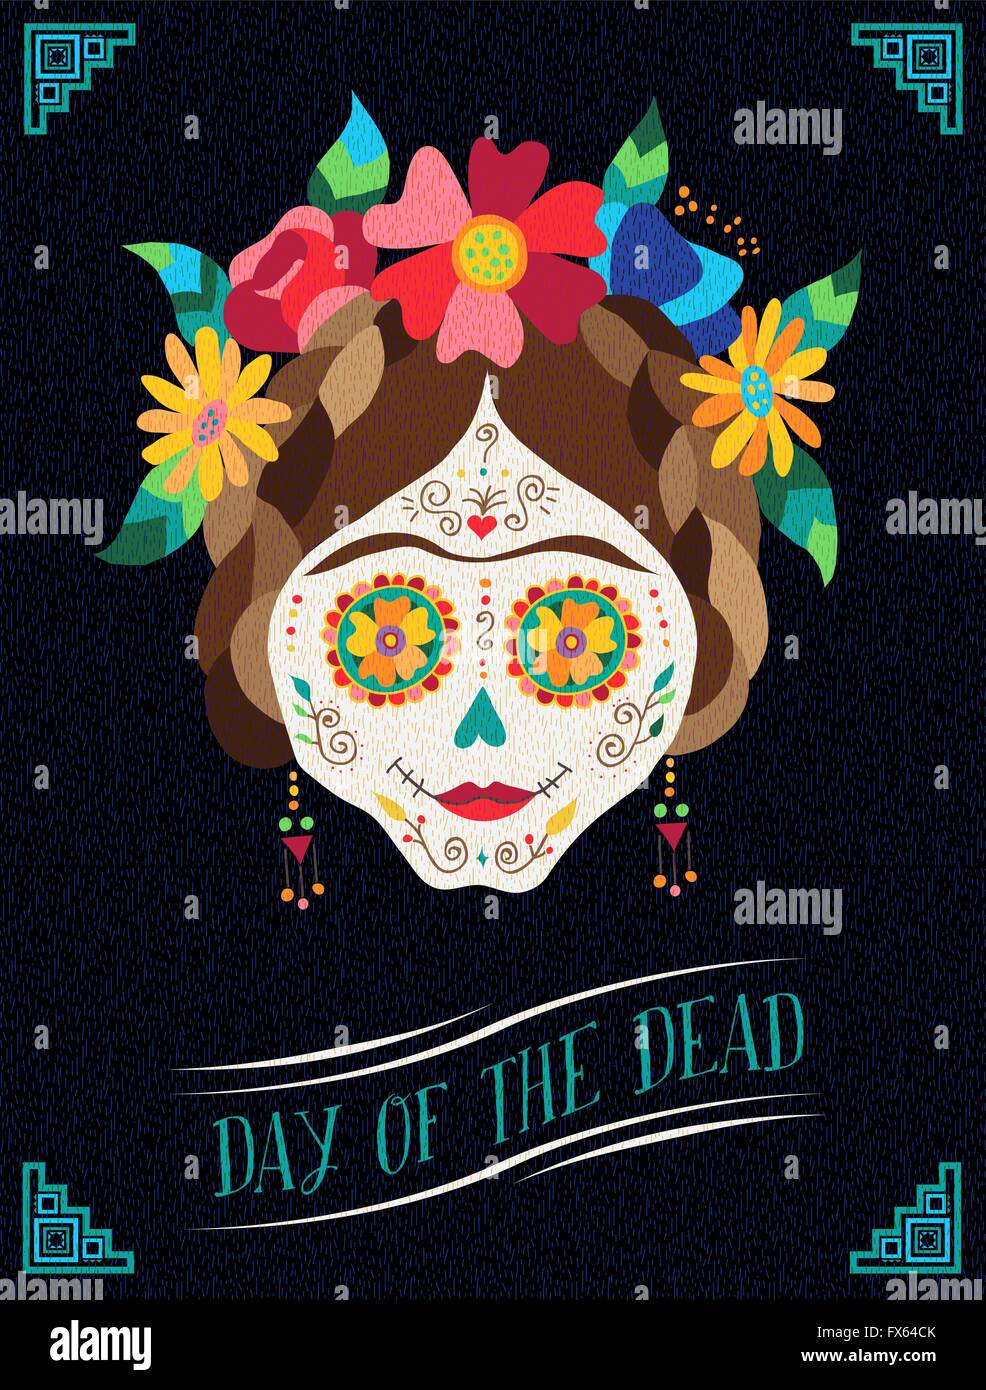 Mexiko Urlaub Plakat Design Tag von den Toten Illustrationskunst, traditionelle bemalte Schädel mit Blumenschmuck. EPS10 Vektor. Stock Vektor